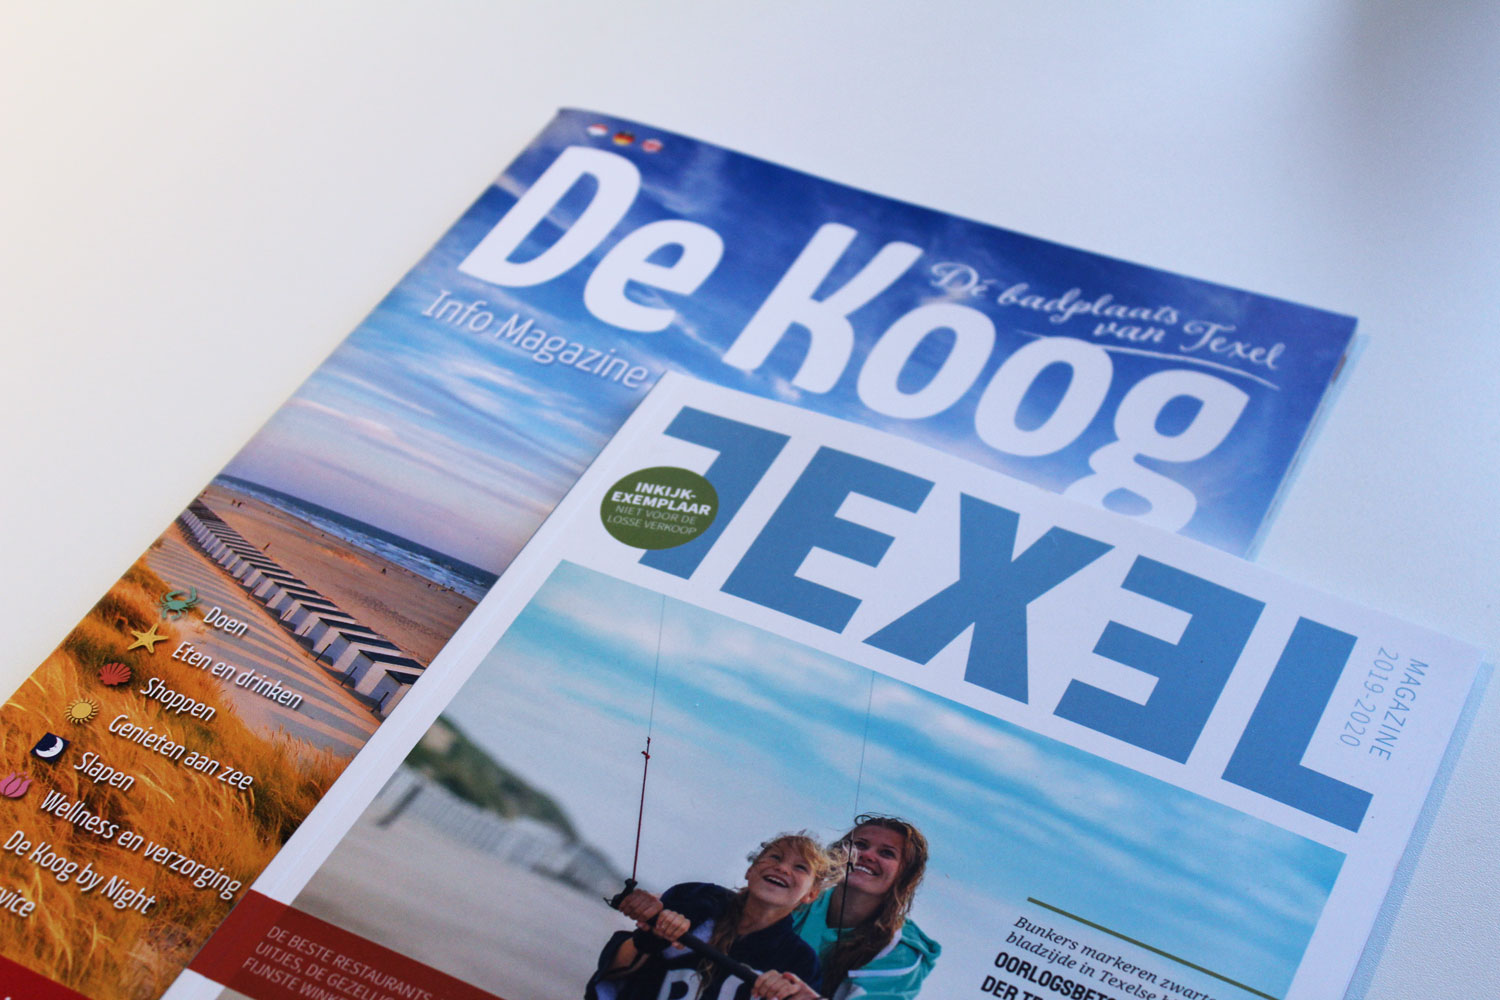 Absolute aanrader voor een weekendje weg: Texel!